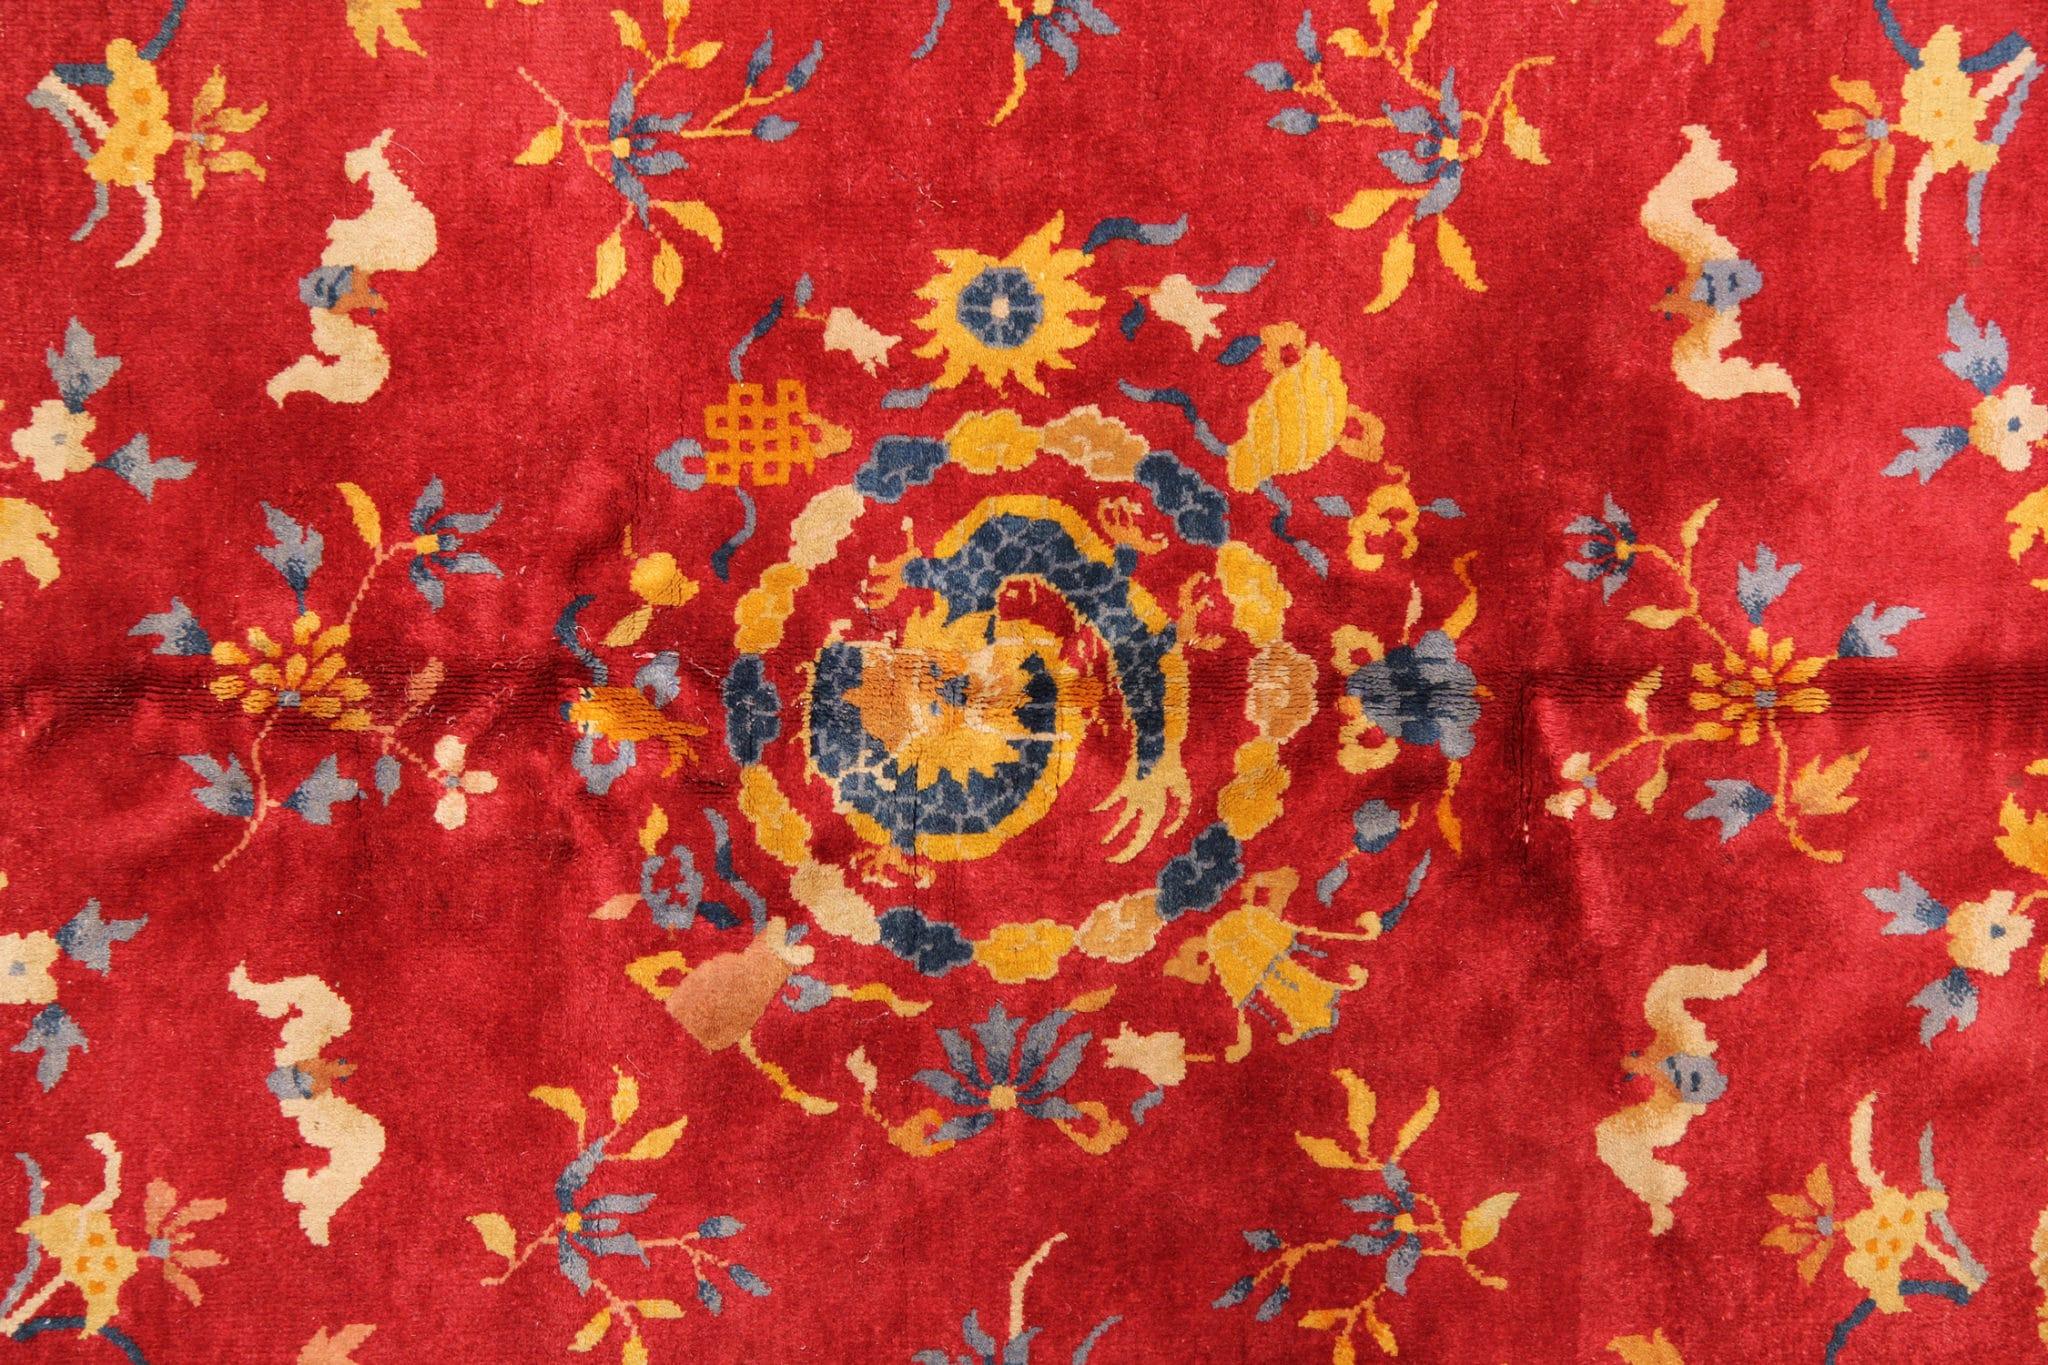 Dieser exquisite rote, antike Teppich ist ein faszinierendes Stück, das mit jedem komplizierten Knoten Geschichten aus der Vergangenheit erzählt. Dieses Meisterwerk wurde in den 1890er Jahren im Herzen Chinas handgefertigt und zeigt die zeitlose